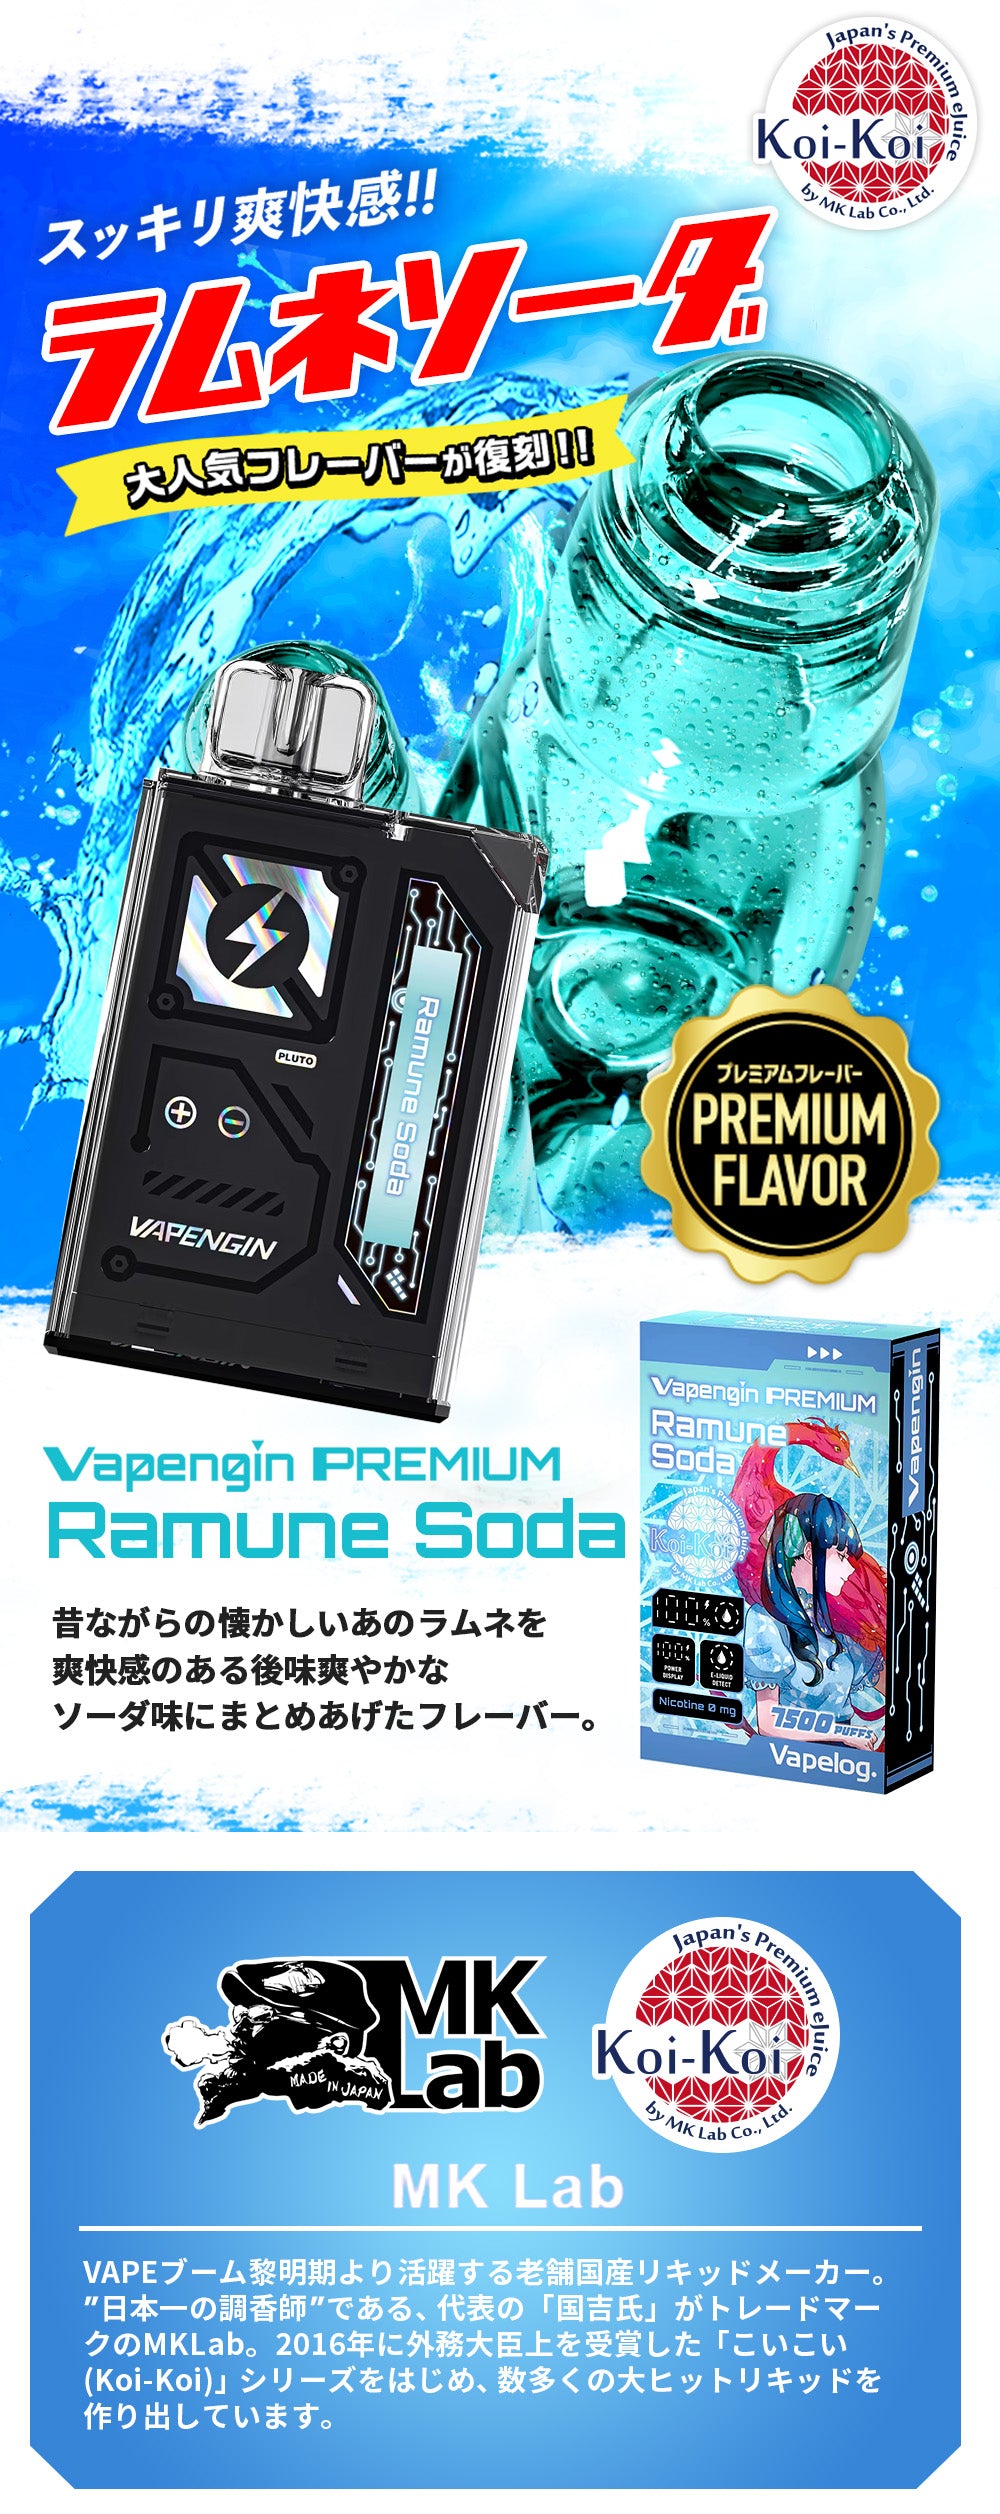 Vapengin7500 (ベイプエンジン) Ramune Soda (ラムネソーダ)